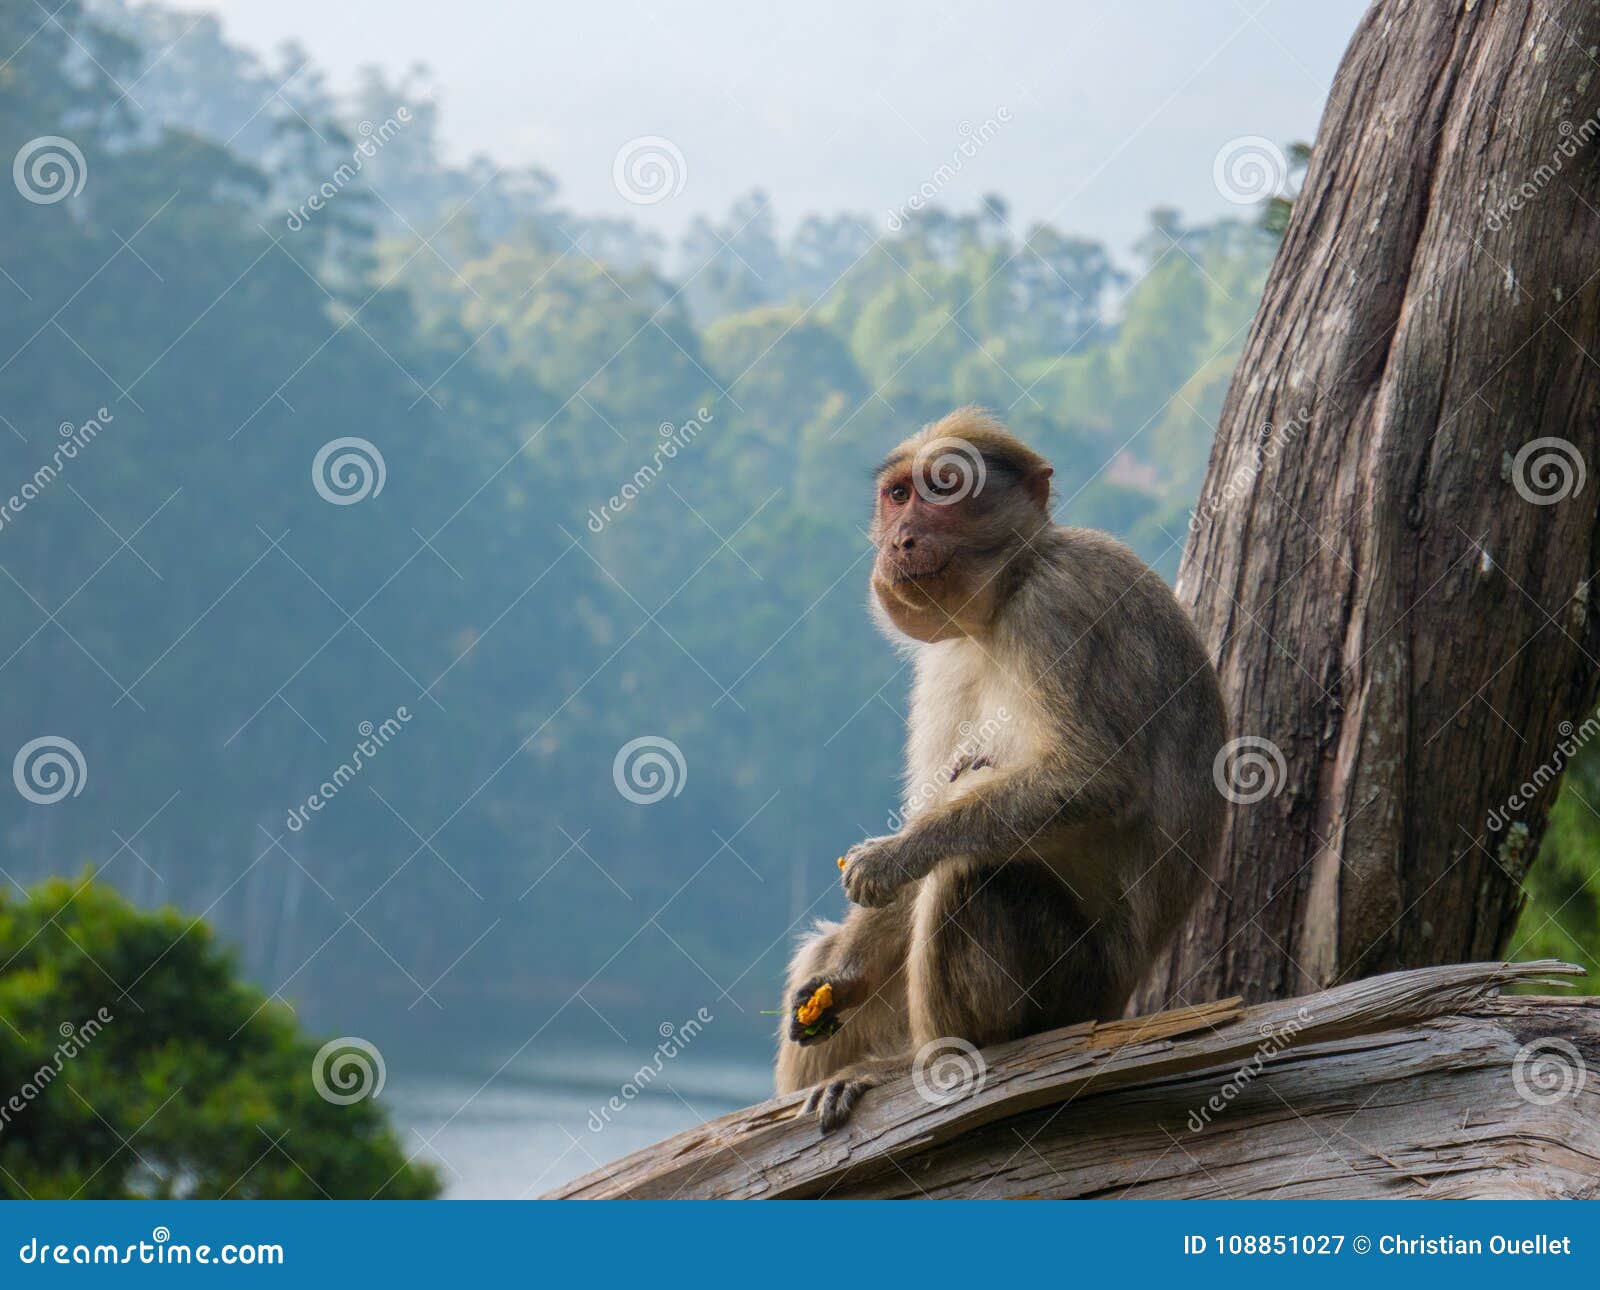 330 melhor ideia de Fotos engraçadas de macacos  fotos engraçadas de  macacos, macacos, fotos engraçadas